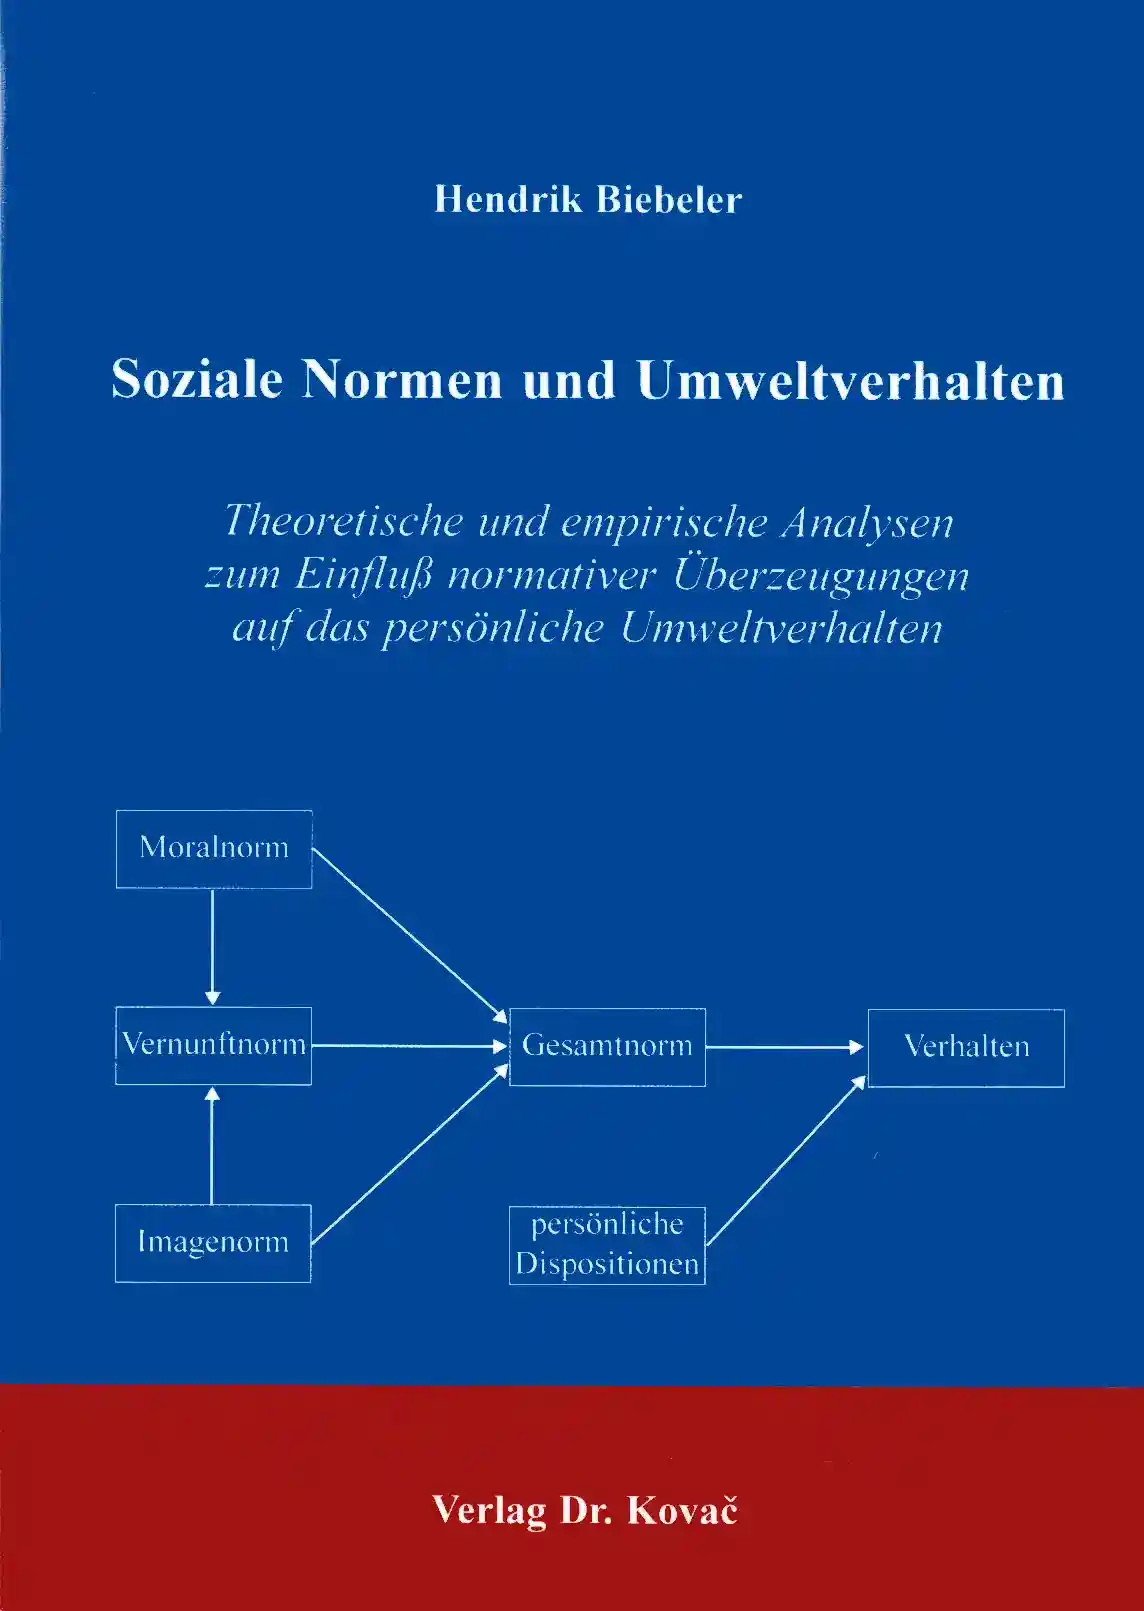 Soziale Normen und Umweltverhalten (Doktorarbeit)